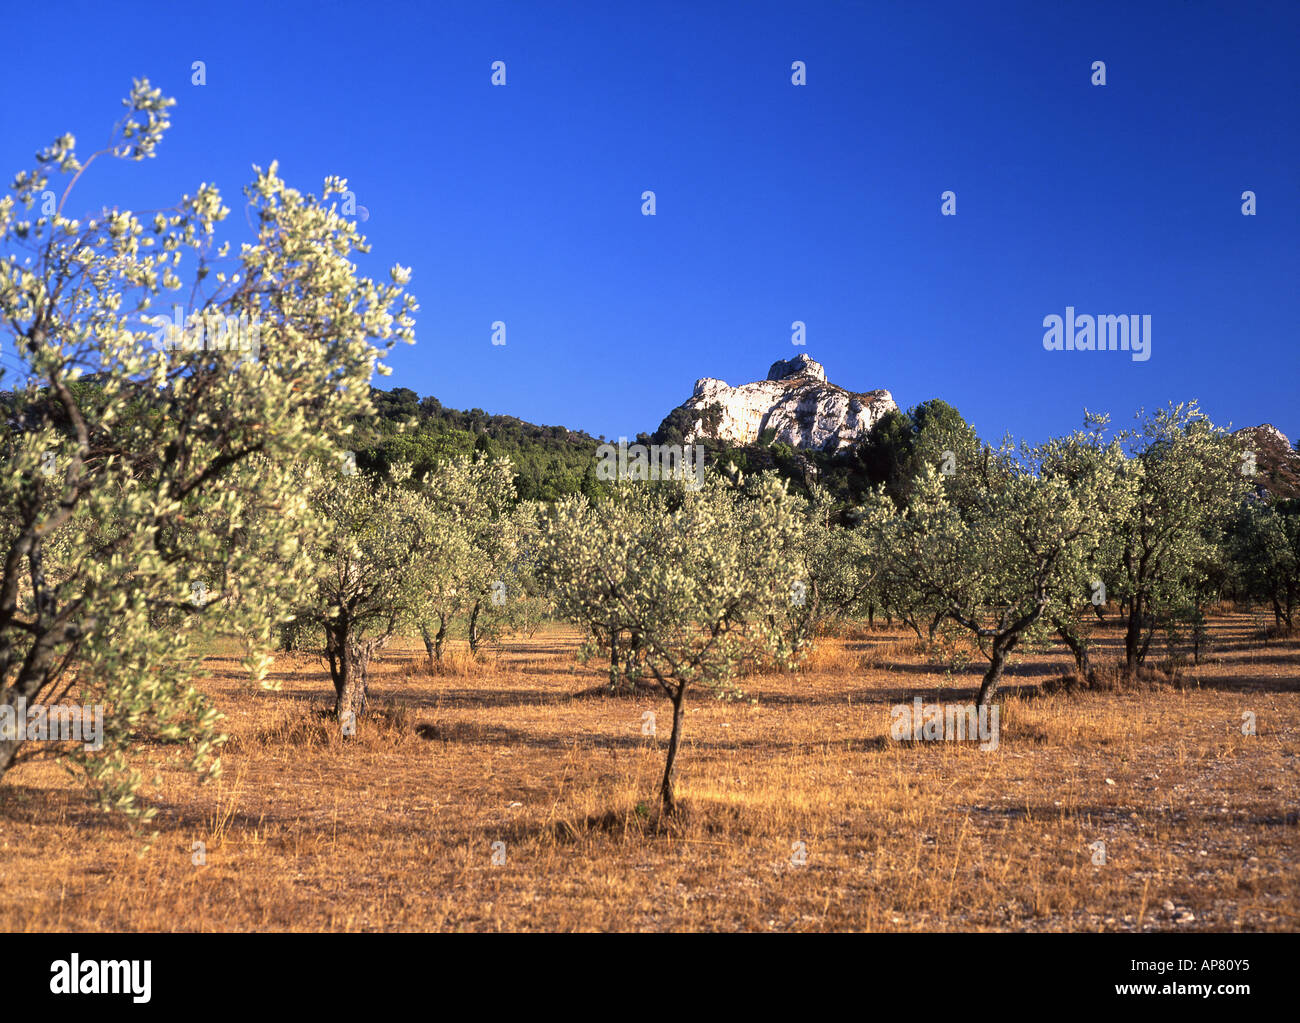 Olive Grove près de St Rémy de Provence Alpilles avec montagnes en arrière-plan Bouches-du-Rhône Provence France Banque D'Images